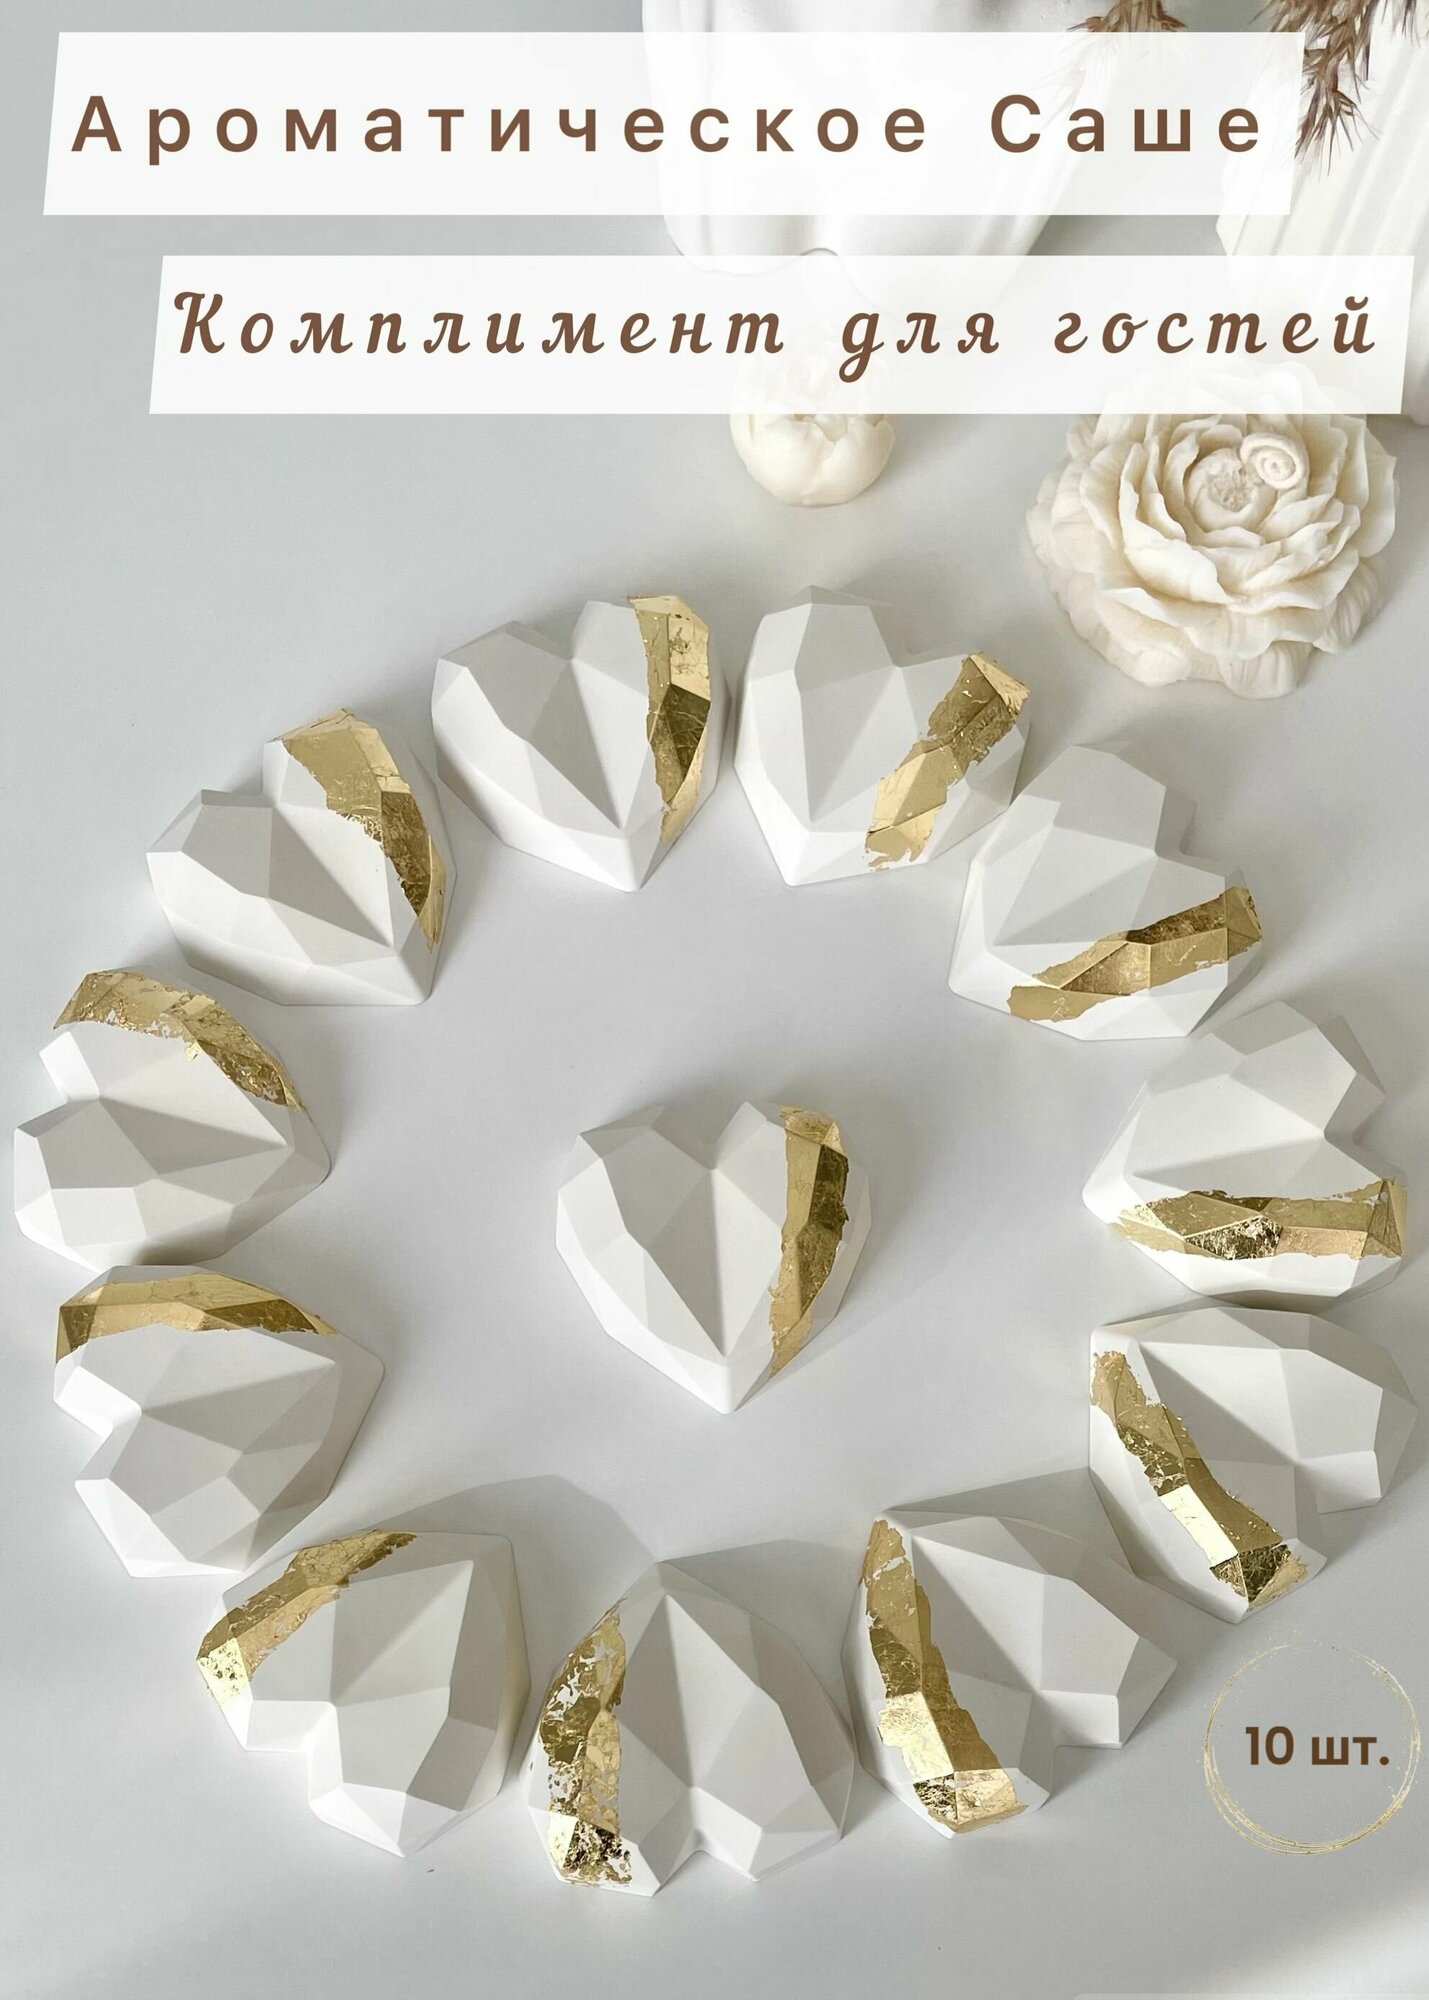 Свадебные подарки комплименты для гостей / Свадебные бонбоньерки белые с золотым 10 штук